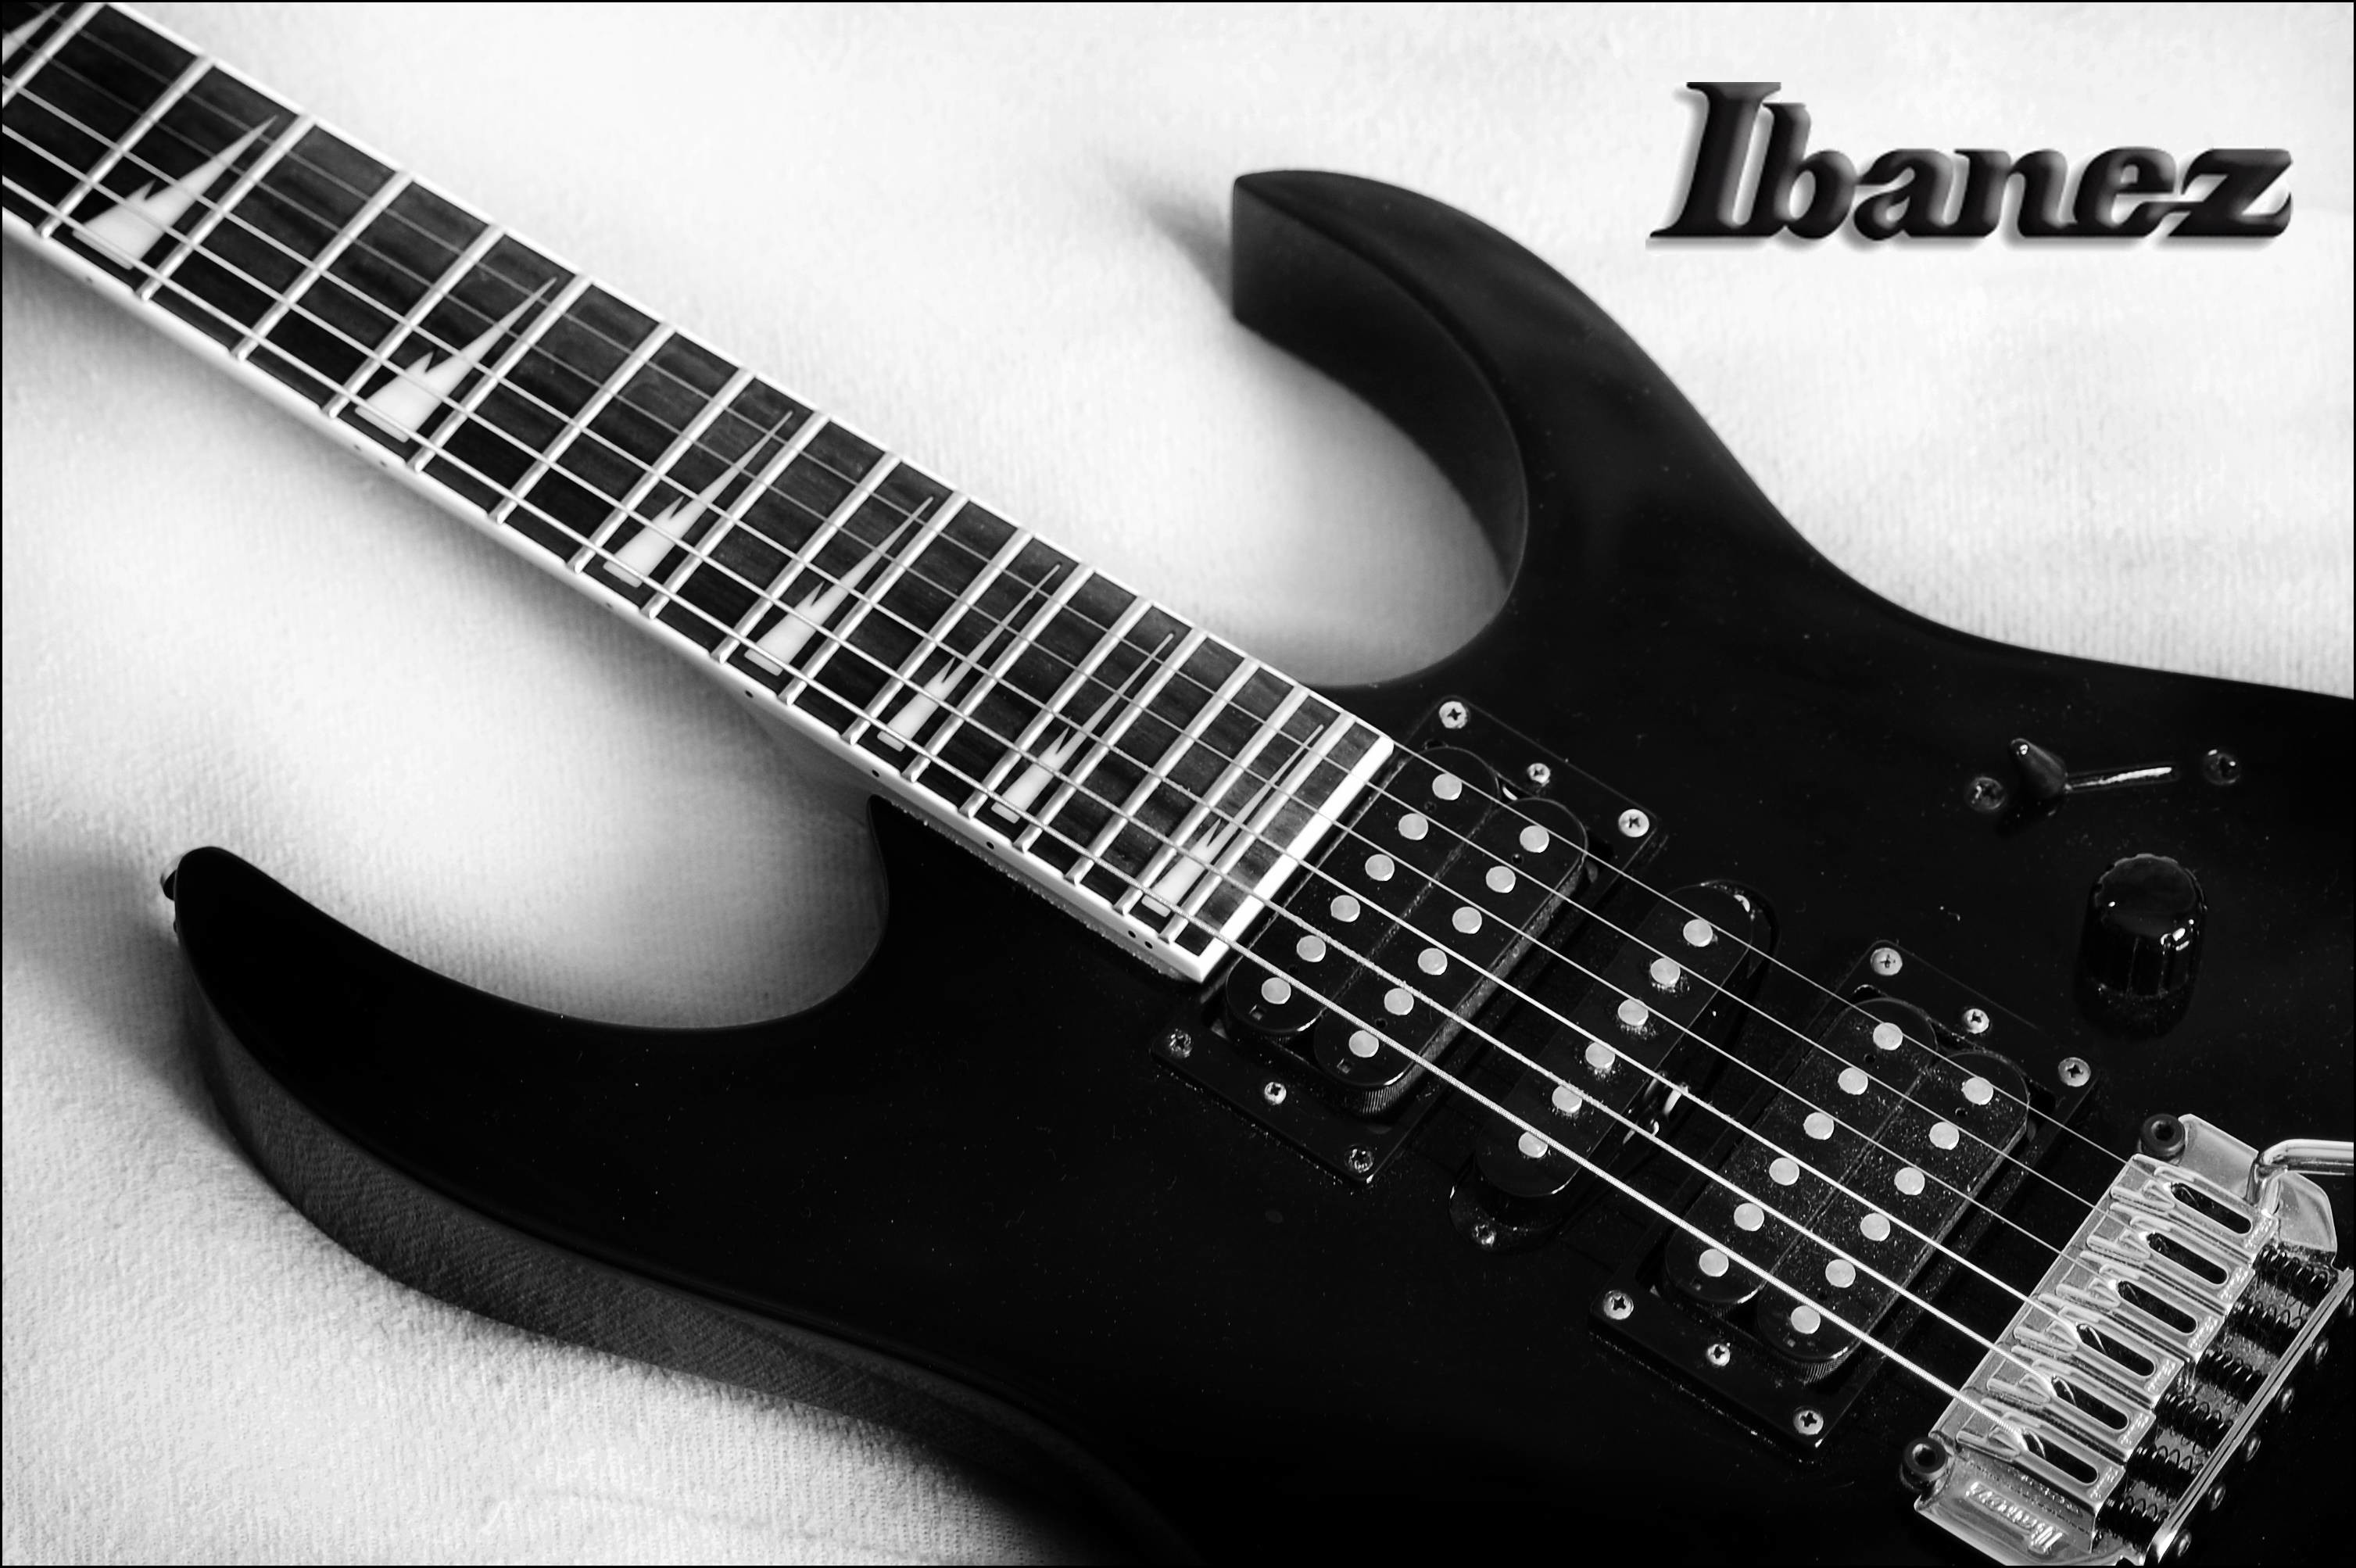 fond d'écran guitare hd 1920x1080,guitare,instrument de musique,guitare électrique,instruments à cordes pincées,guitare basse